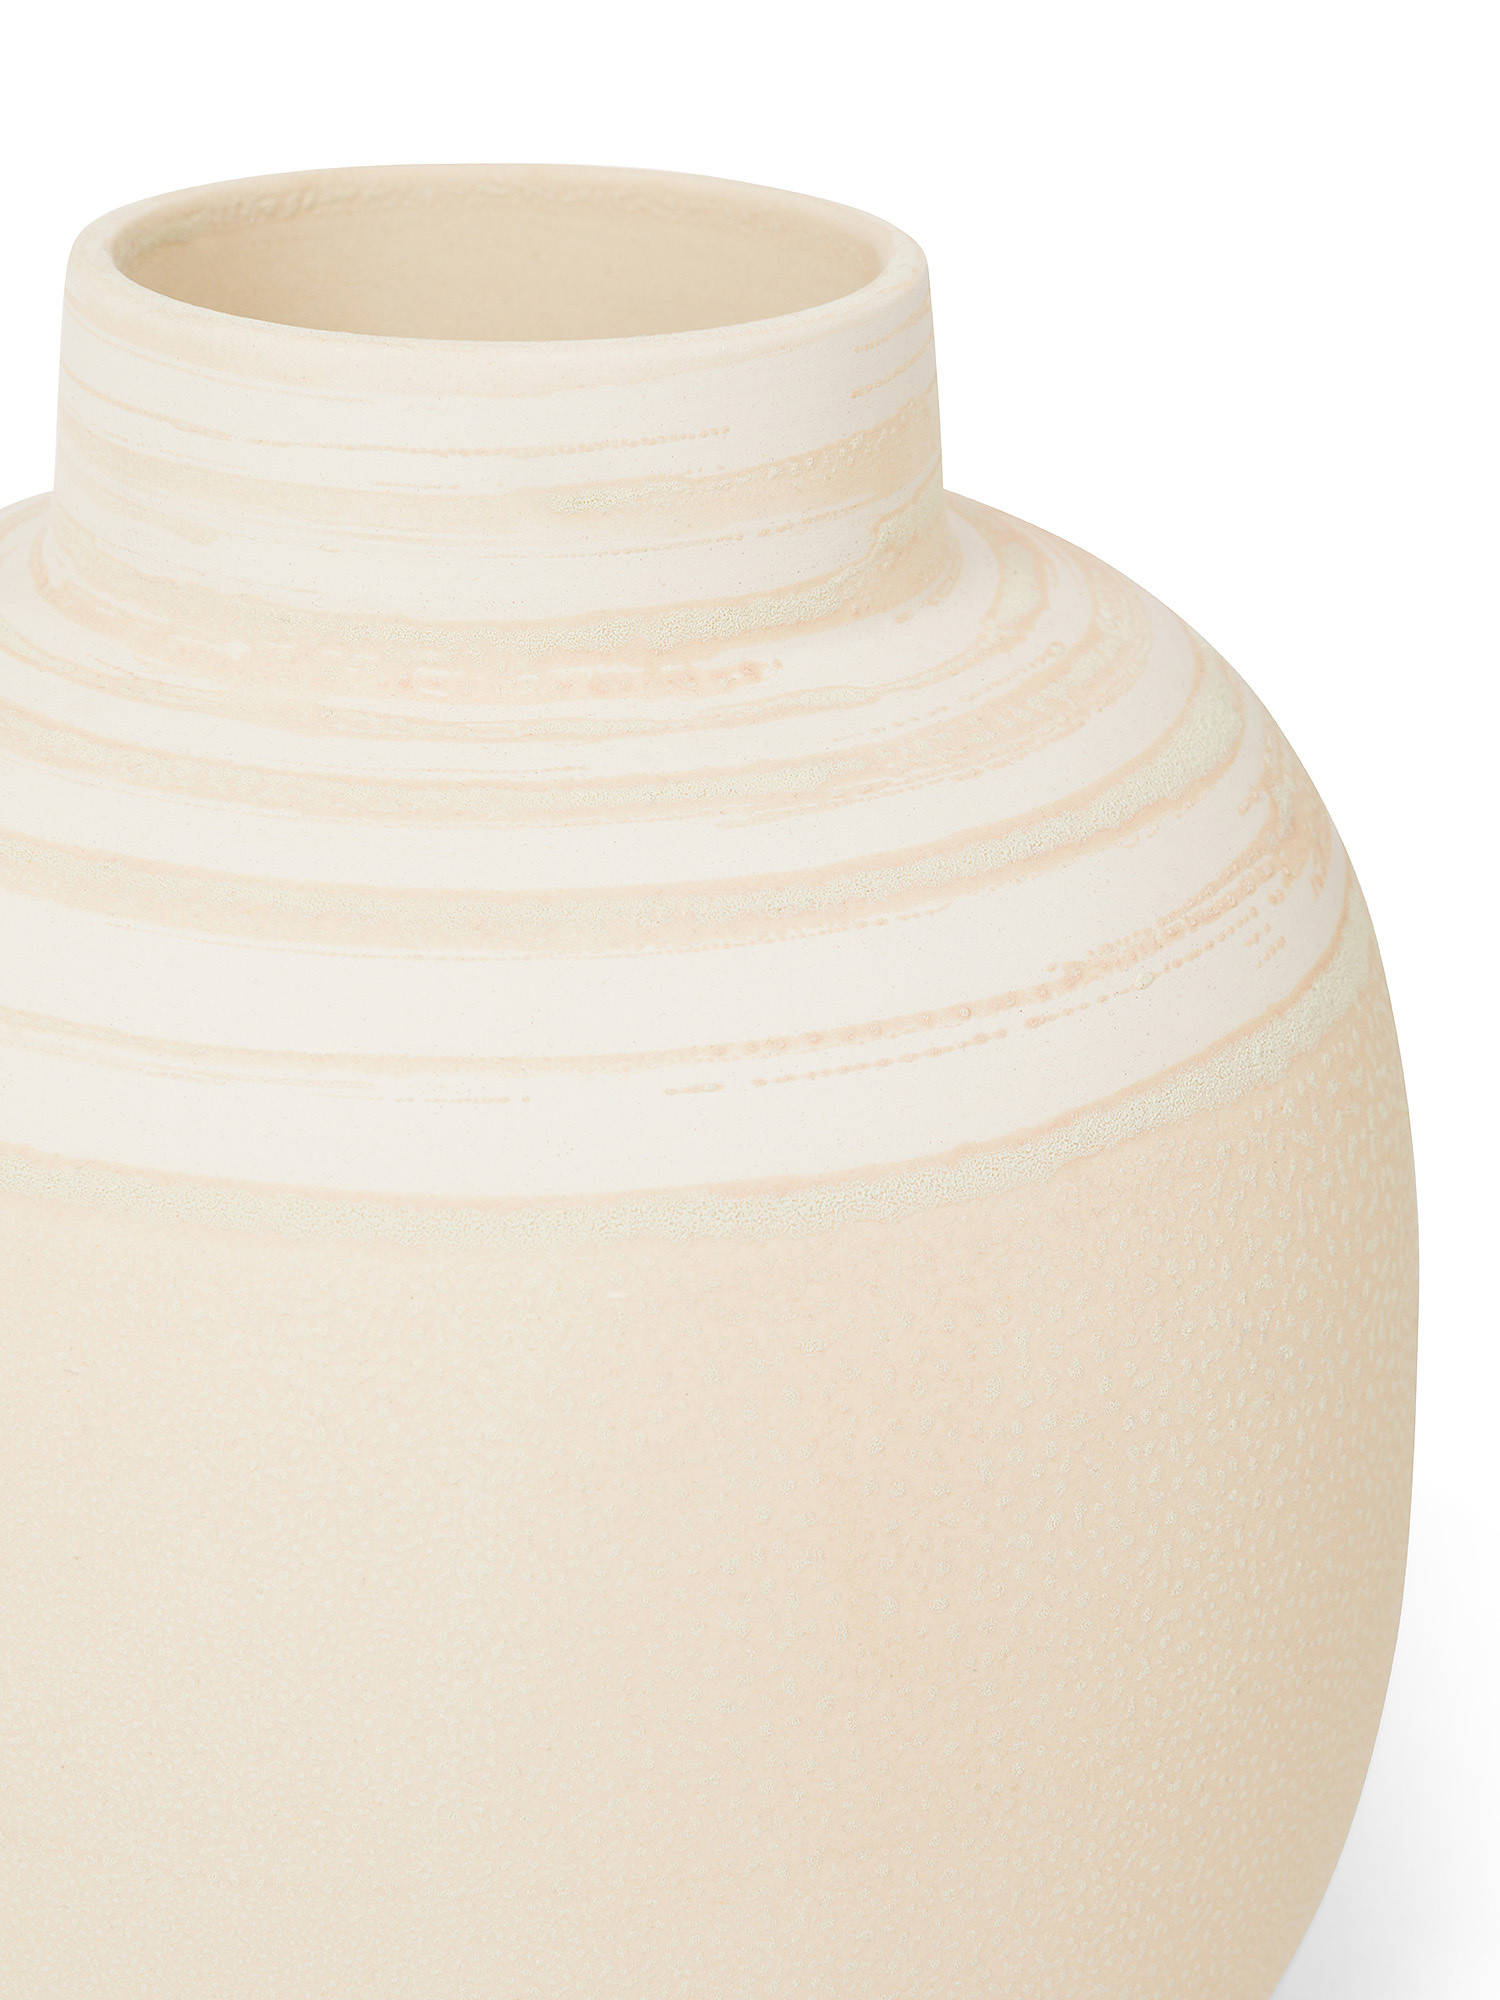 Vaso in ceramica portoghese, Crema, large image number 1